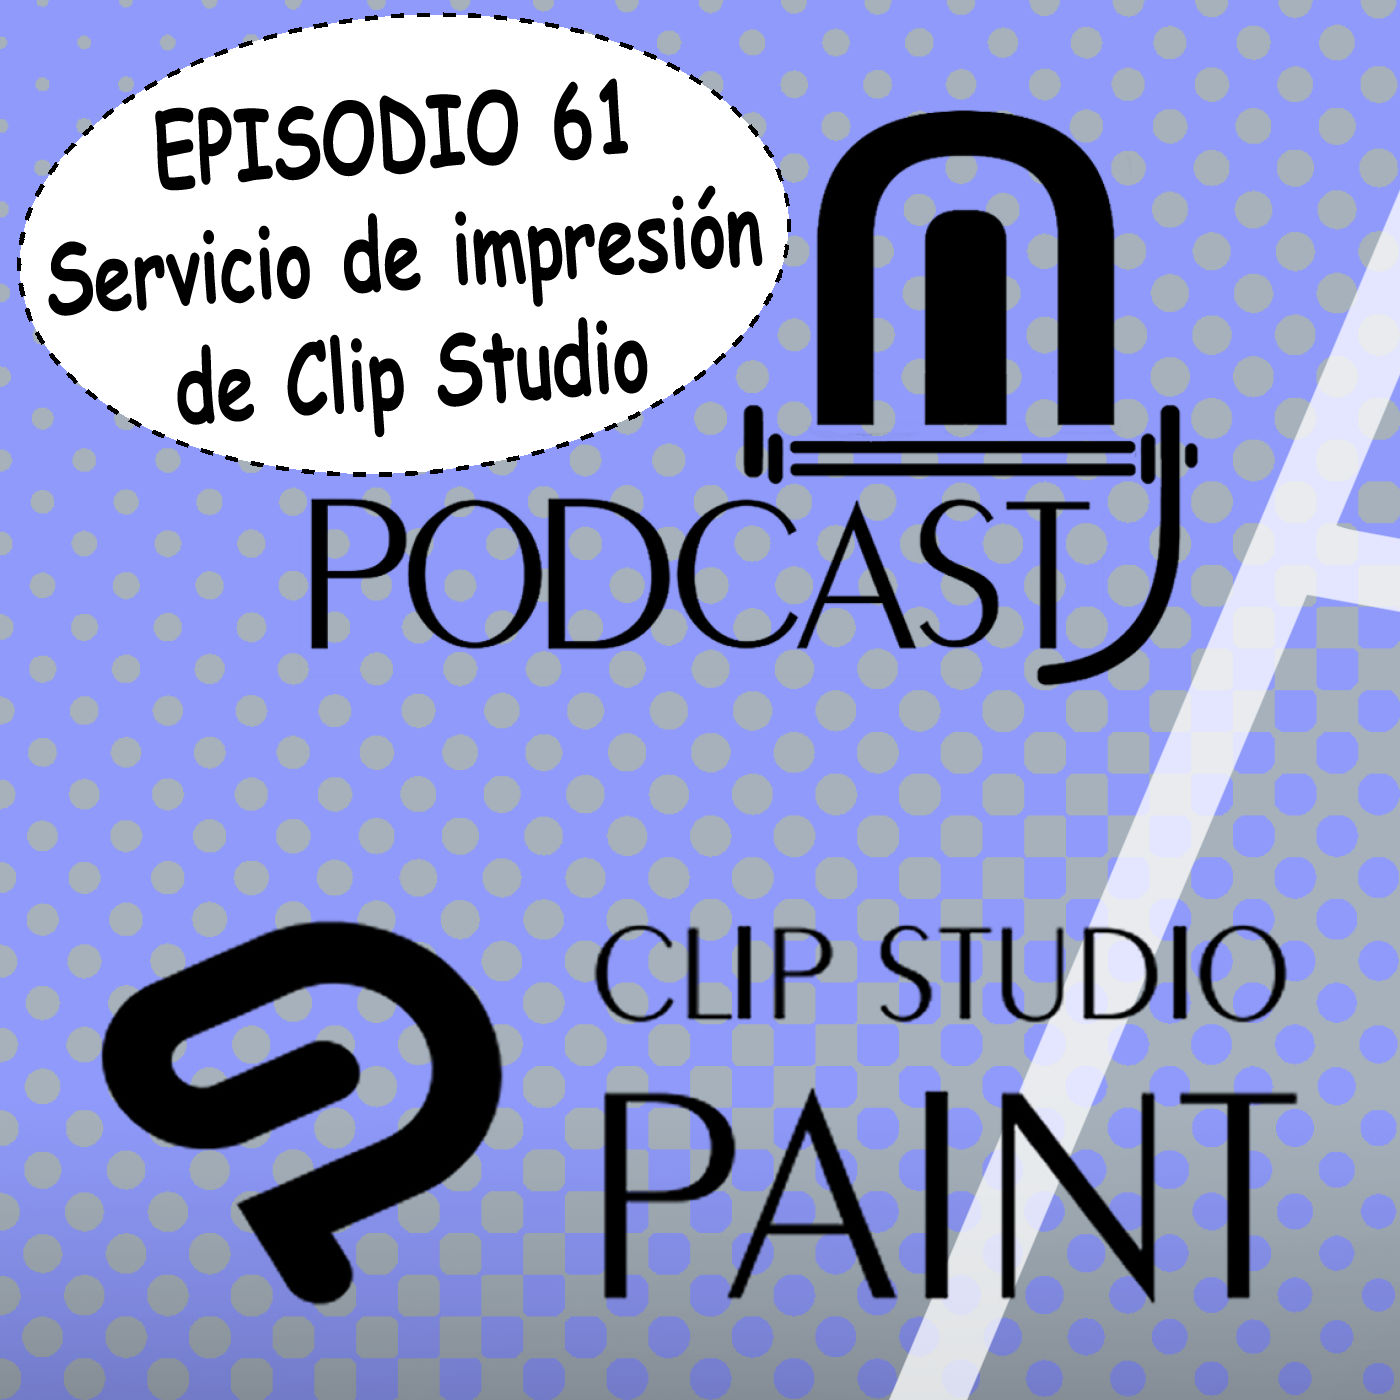 CSP episodio 61. Servicio de impresión de Clip Studio